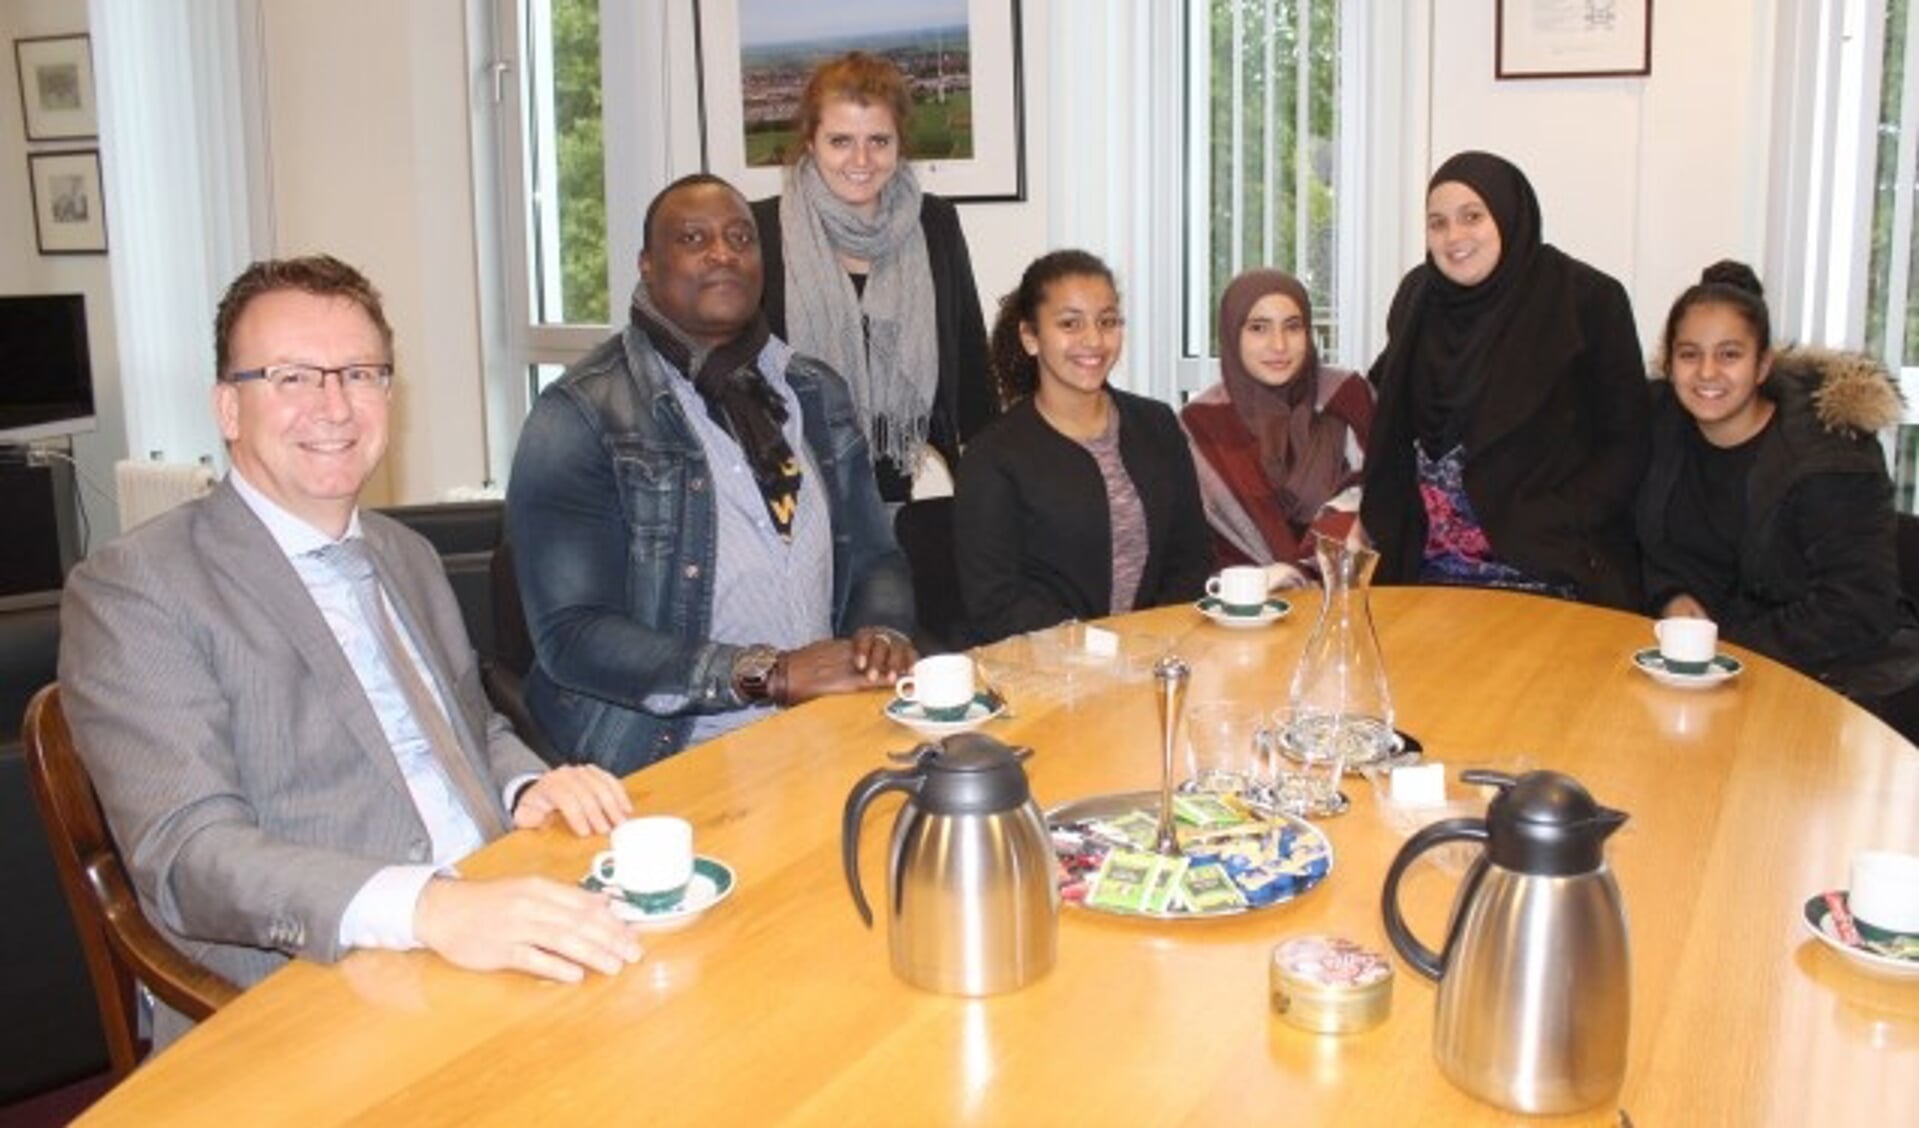 Jongerenwerker Didi Muhiha ging met collega Dominique en vier jongeren op de thee bij de burgemeester om bij te praten en kennis te maken. Foto: Lysette Verwegen